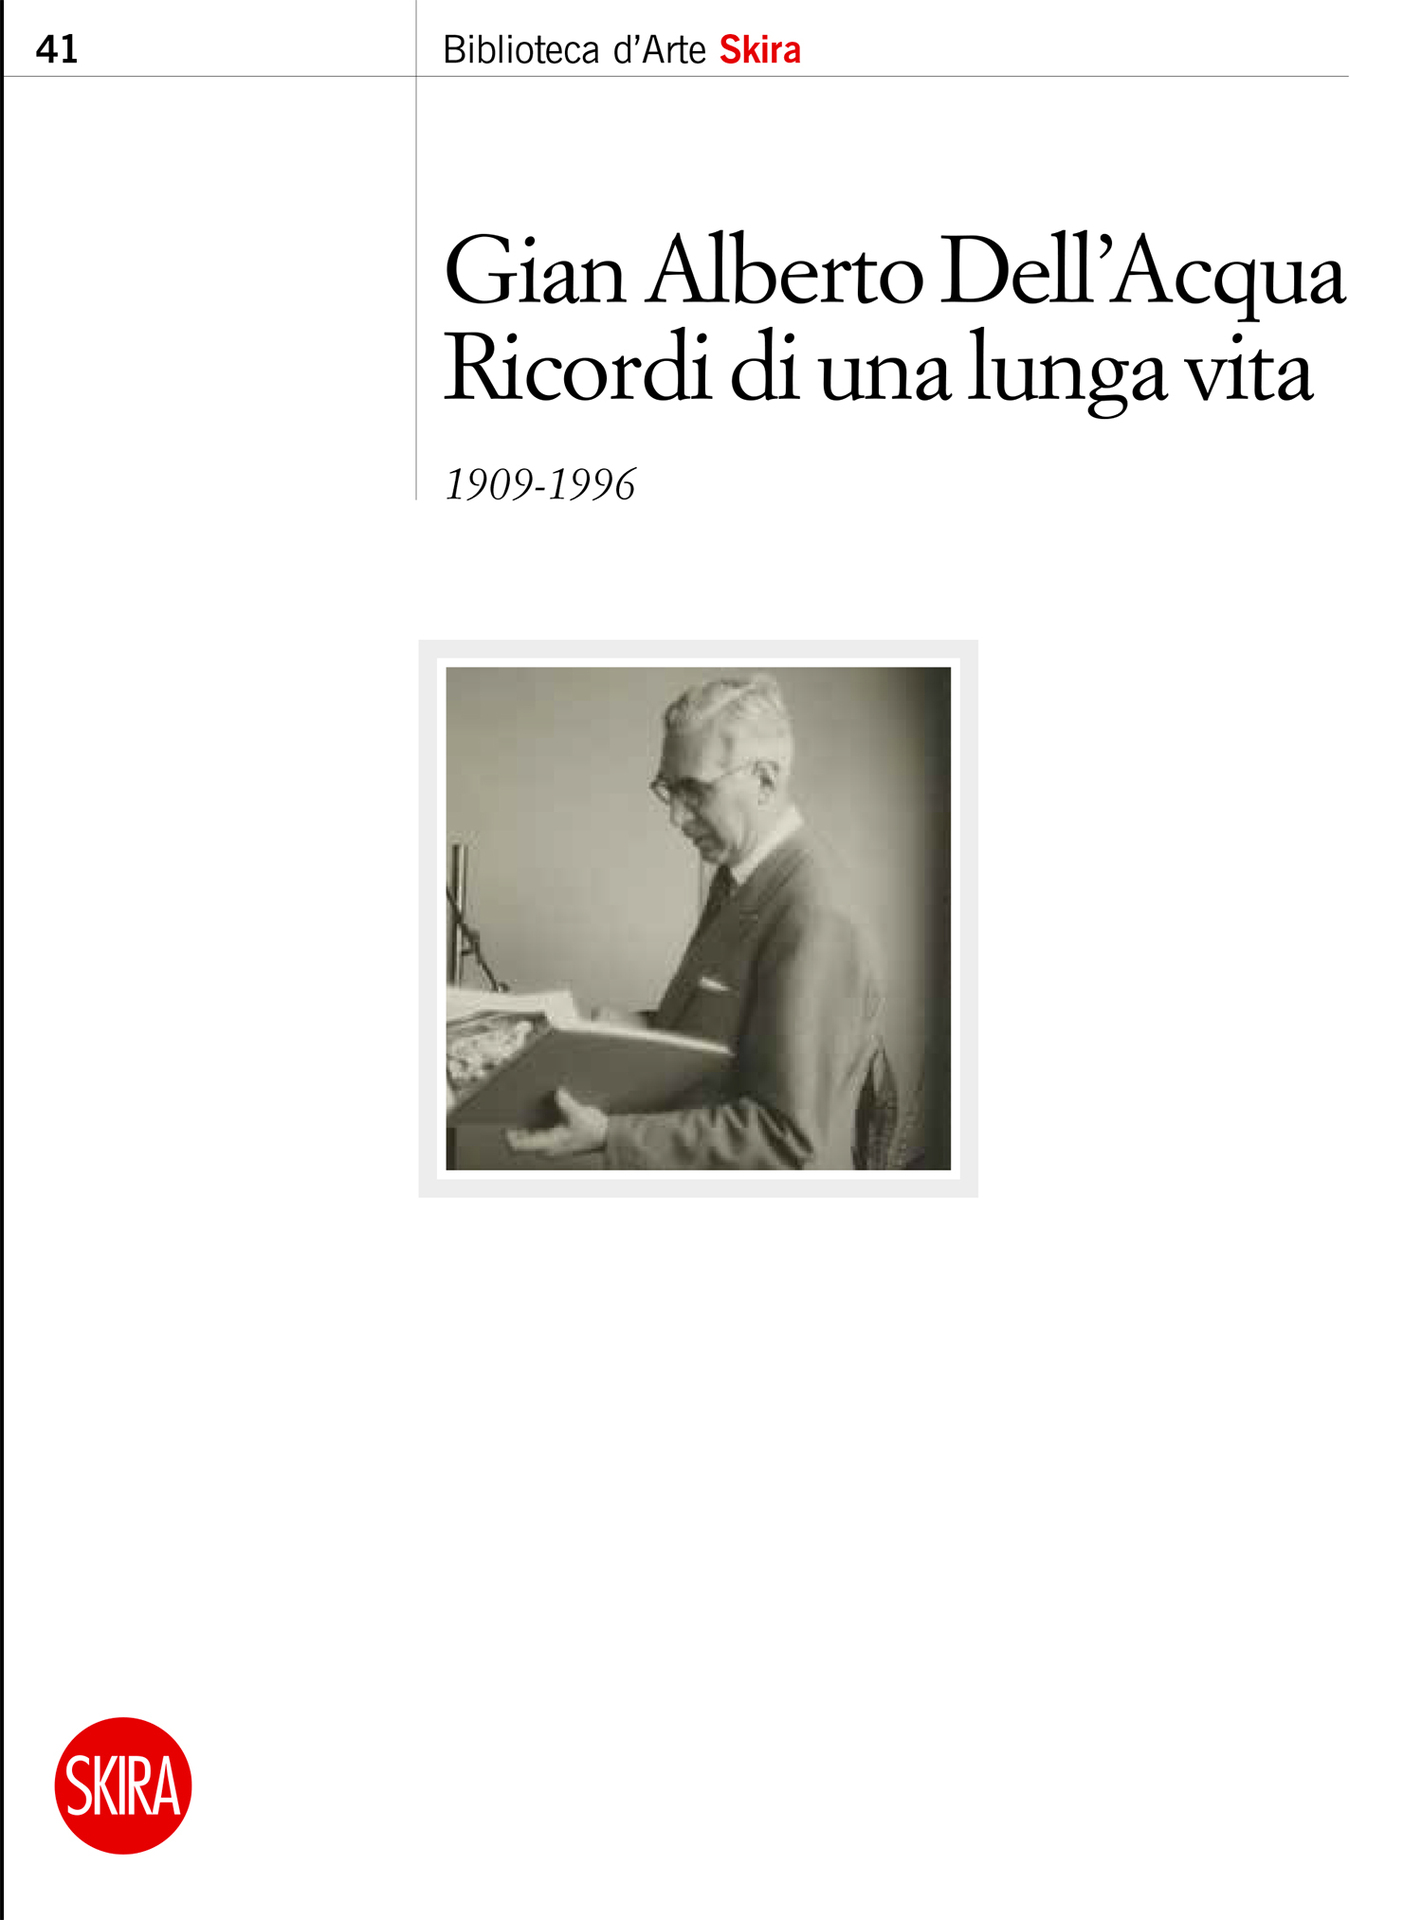 Gian Alberto dell'Acqua, Ricordi di una lunga vita, Skira, 2023